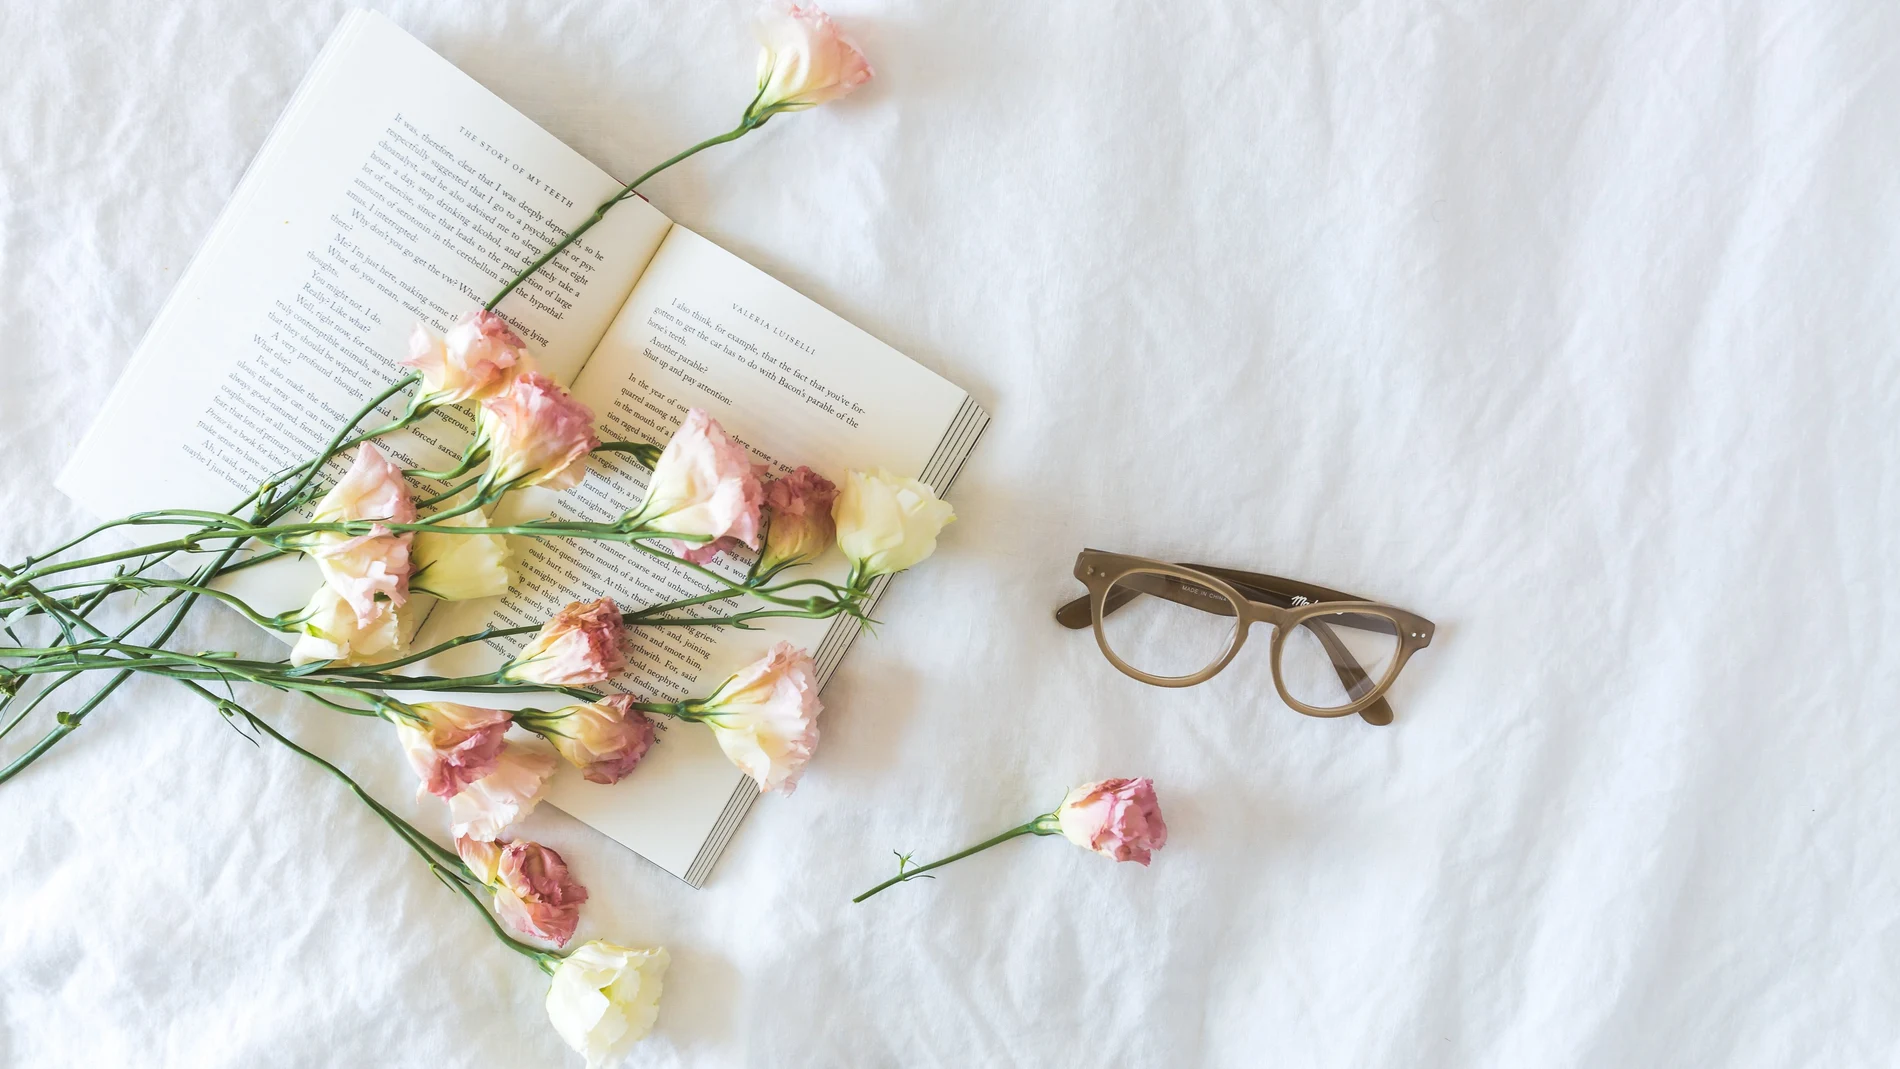 En la imagen, un libro y unas rosas.